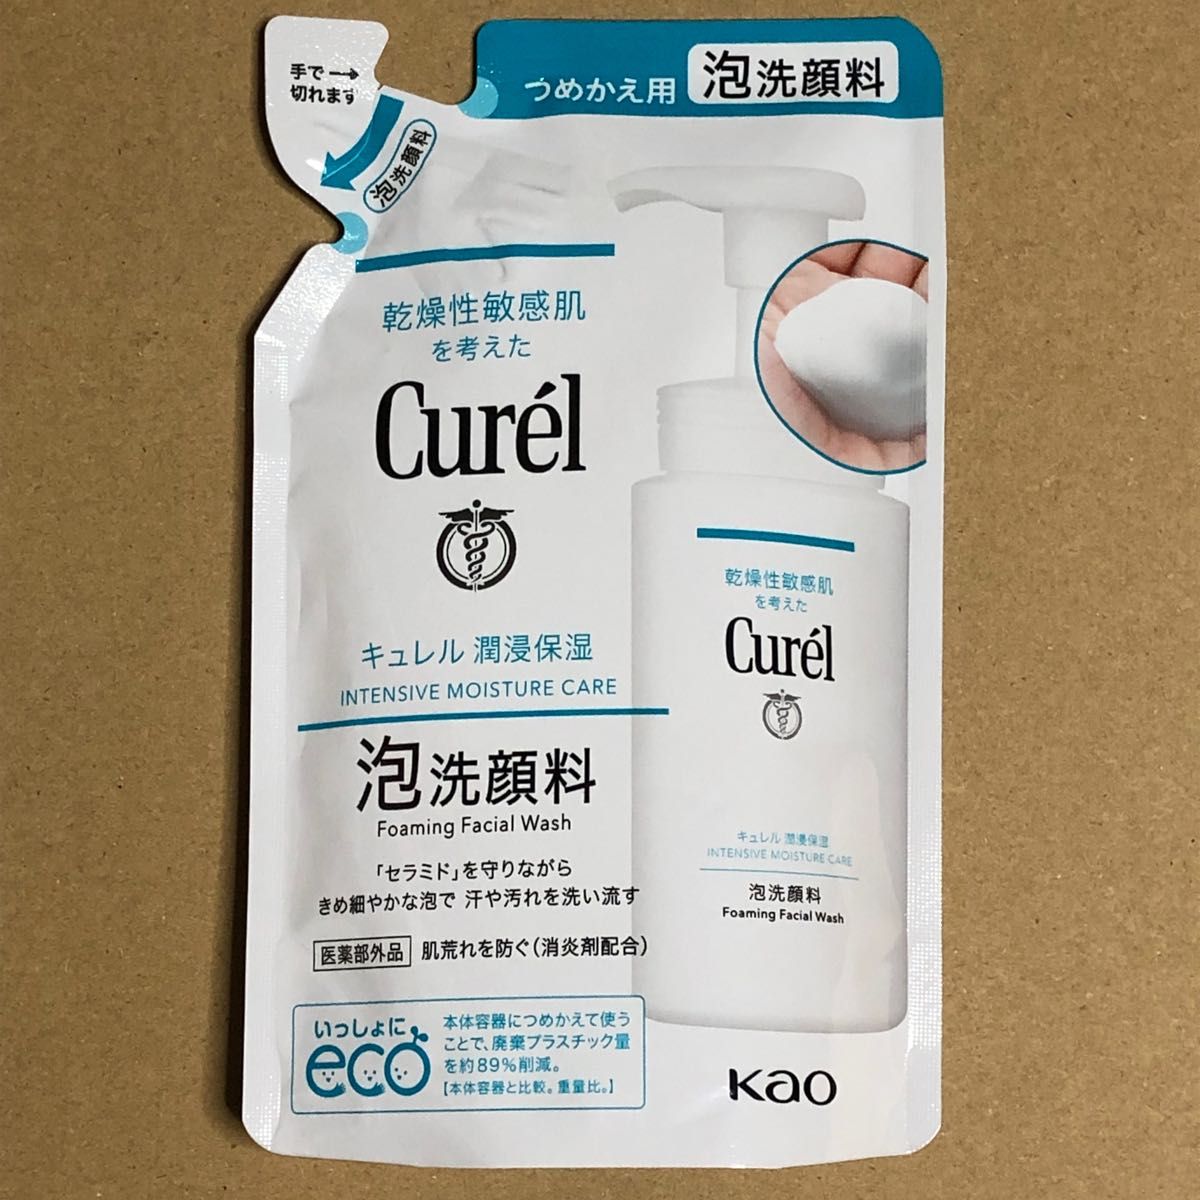 《2個》花王【キュレル Curel 】泡洗顔料つめかえ用 130ml 